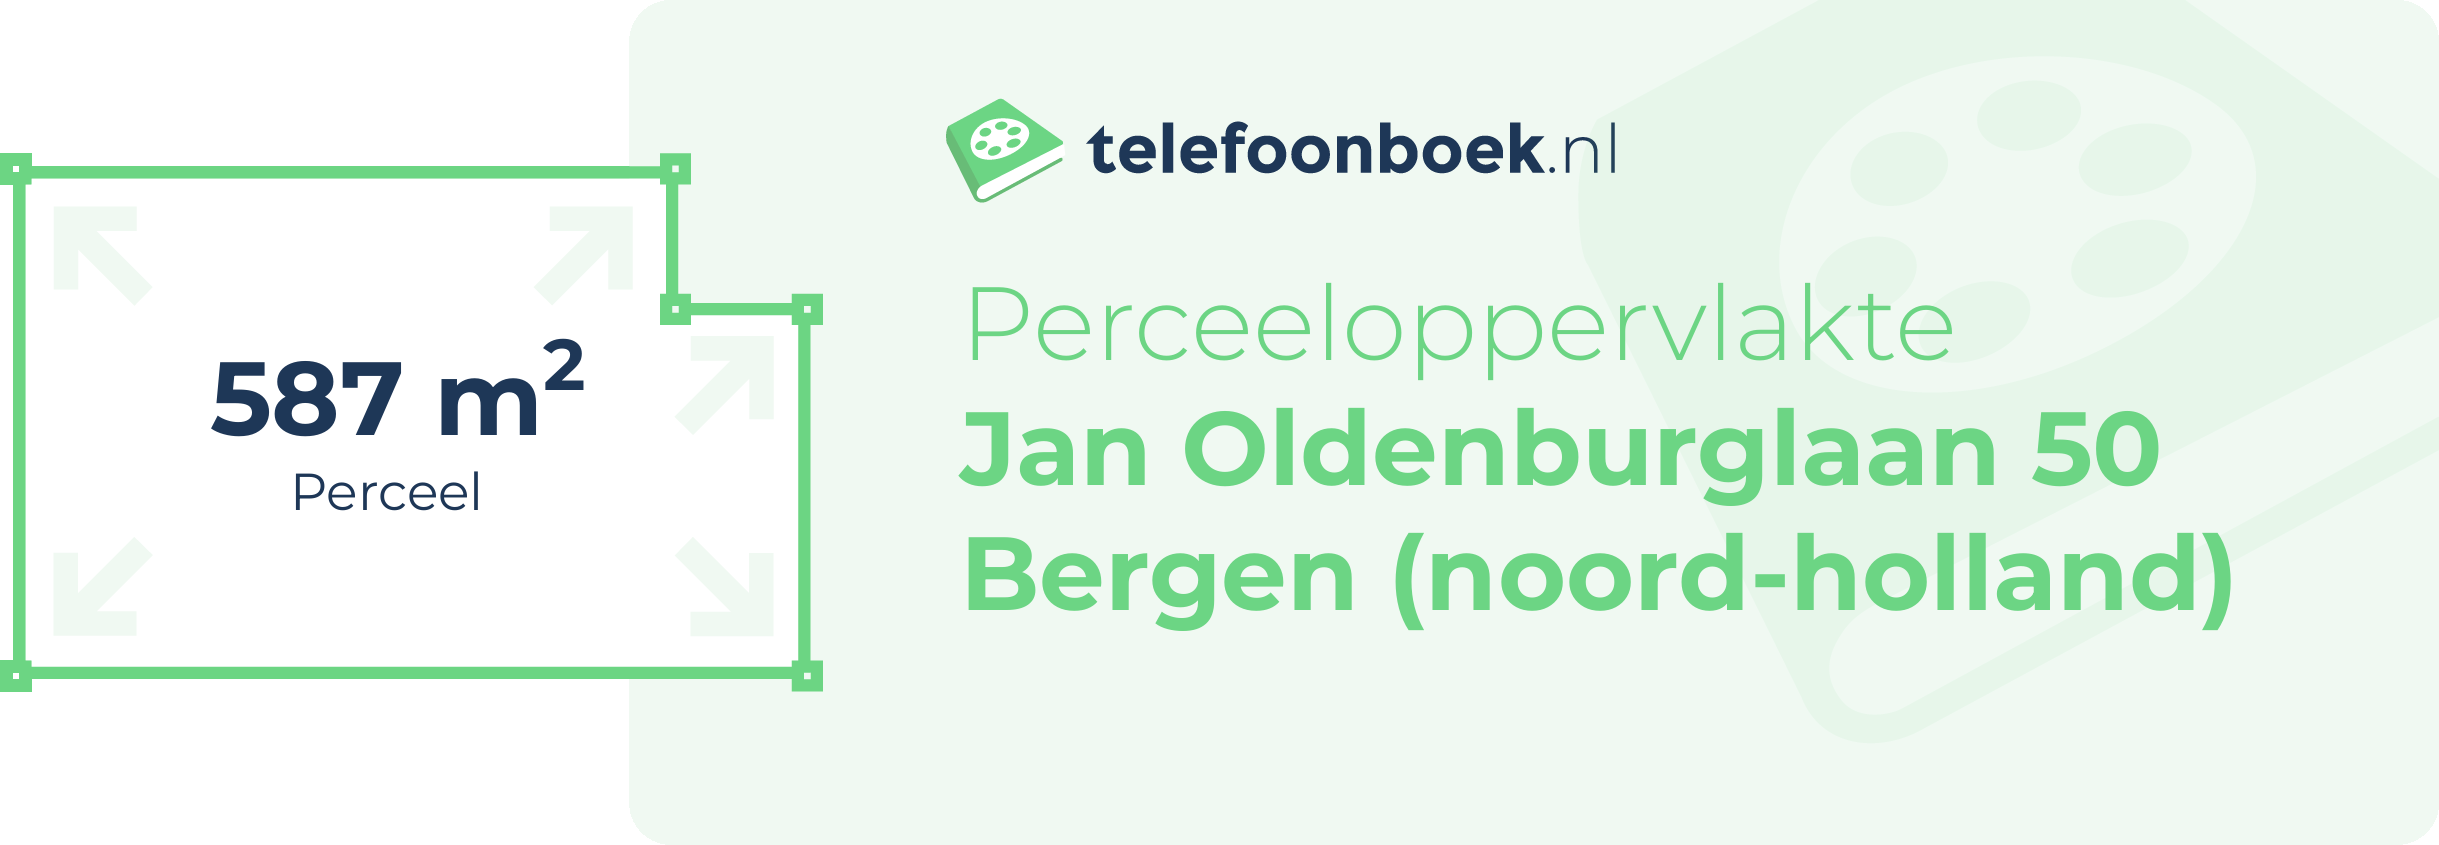 Perceeloppervlakte Jan Oldenburglaan 50 Bergen (Noord-Holland)